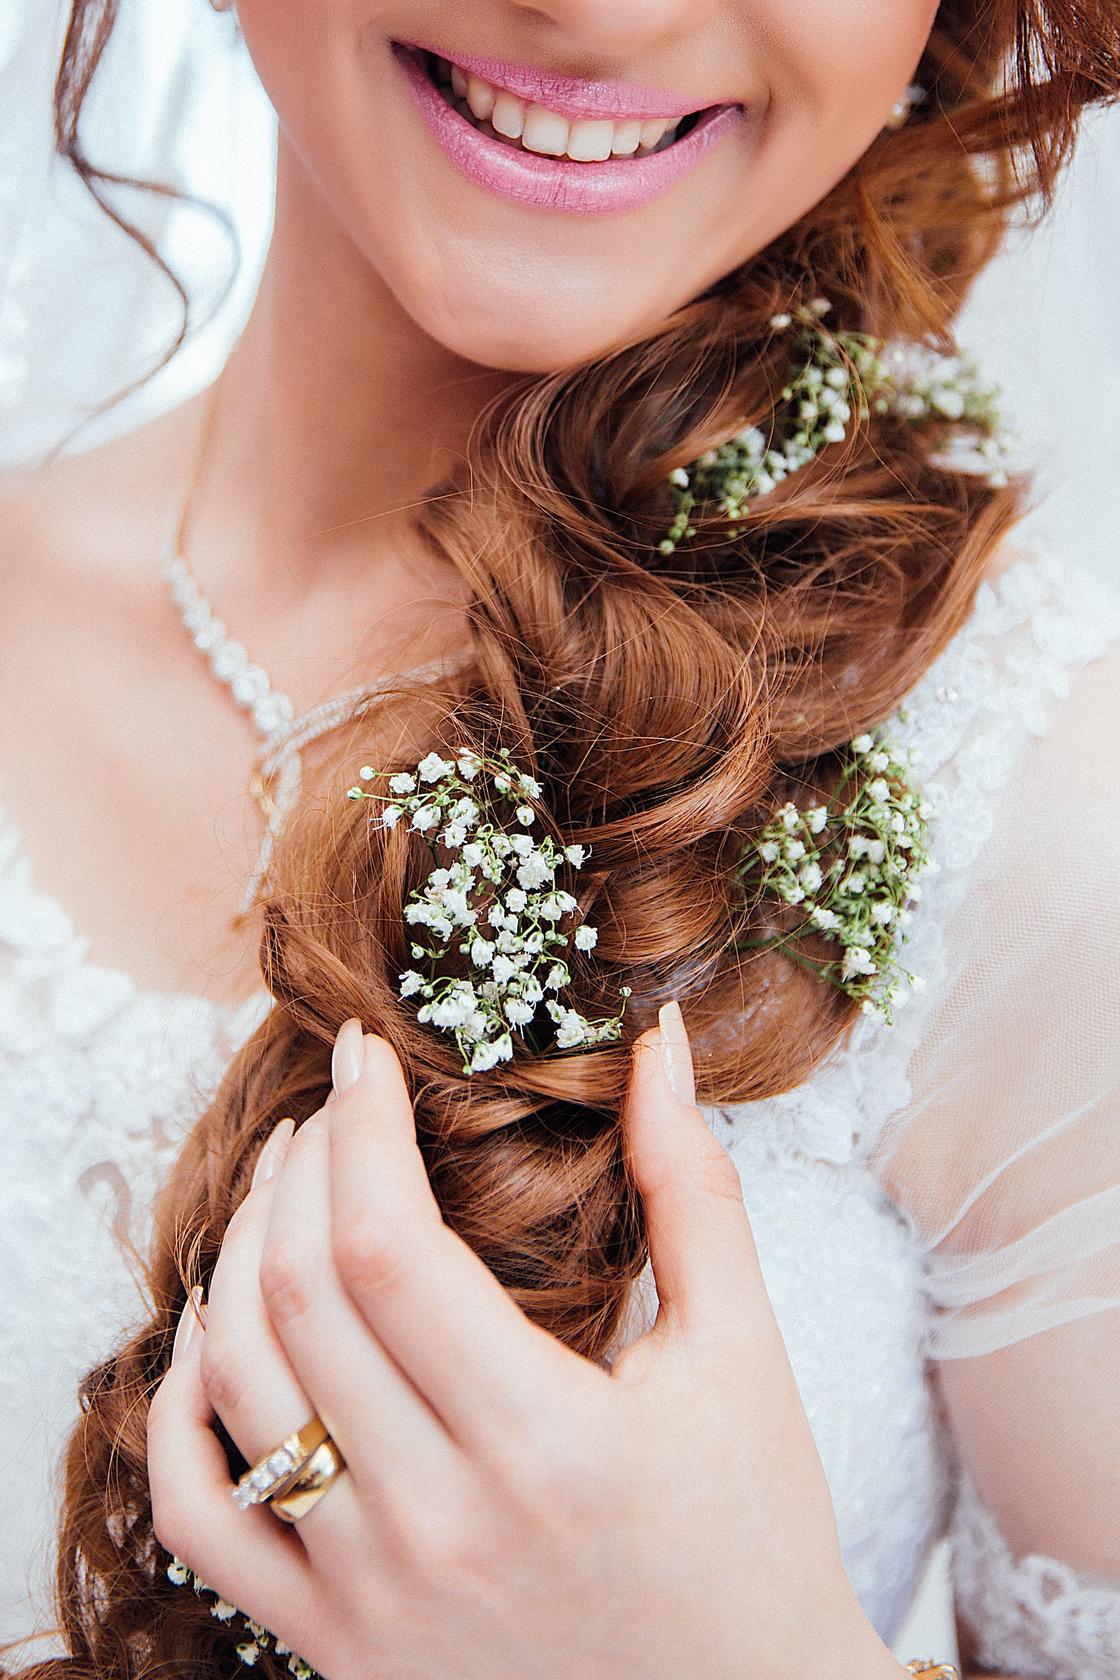 Прическа невесты — коса, украшенная цветами